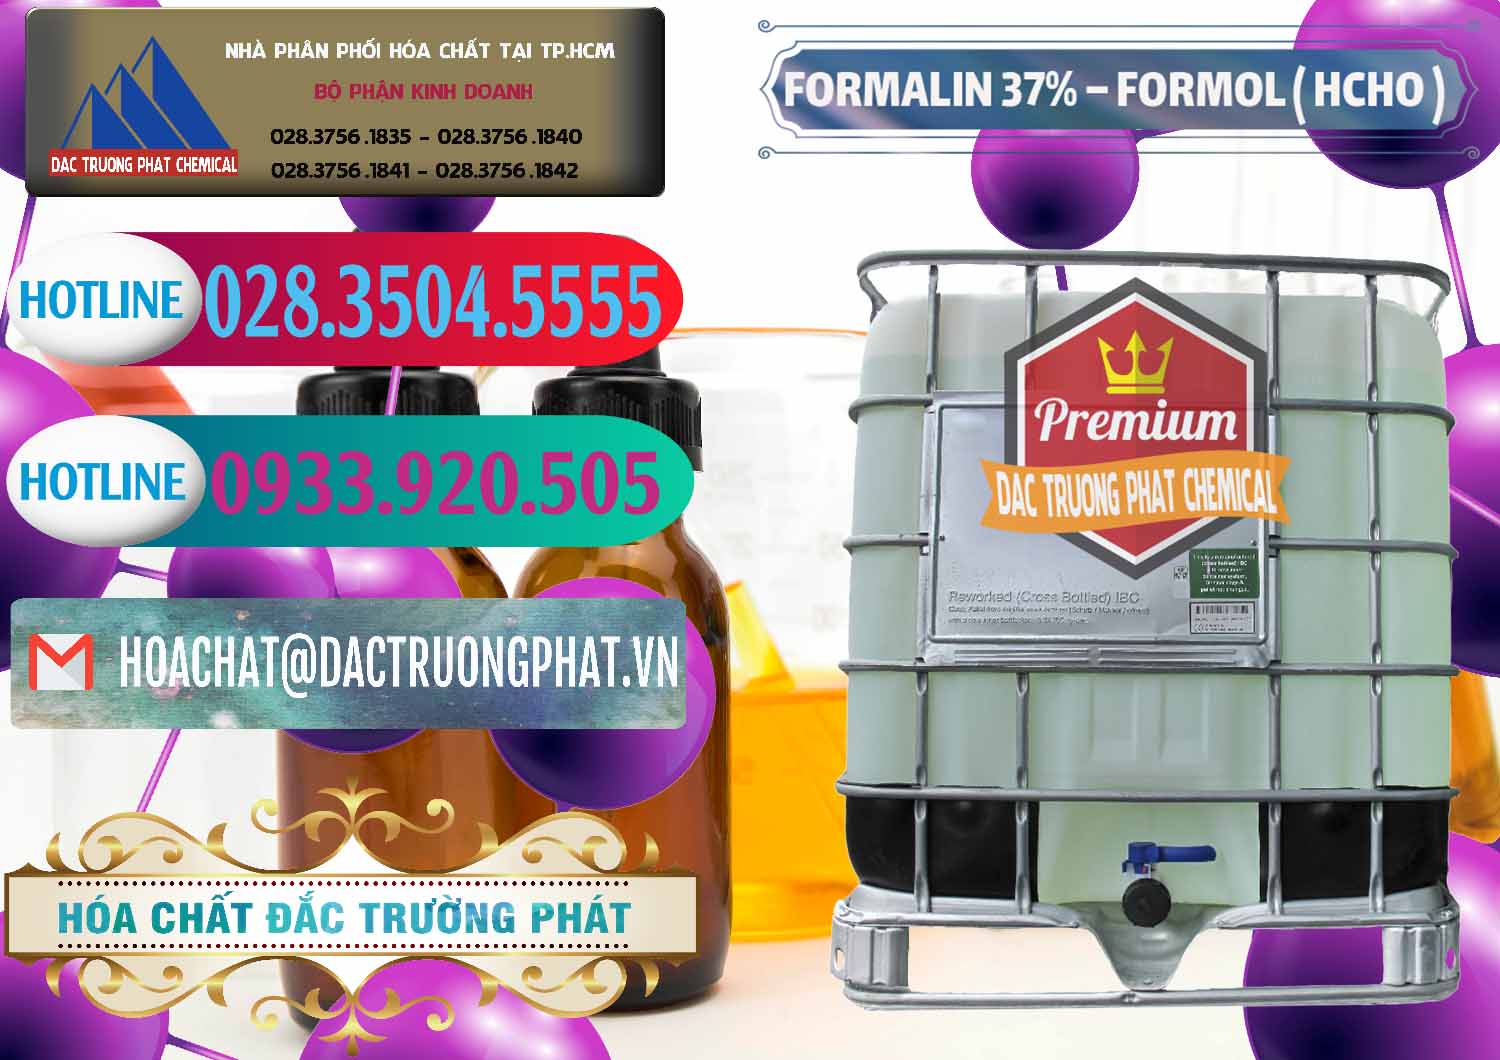 Đơn vị chuyên cung cấp và bán Formalin - Formol ( HCHO ) 37% Việt Nam - 0187 - Nhà phân phối _ kinh doanh hóa chất tại TP.HCM - truongphat.vn